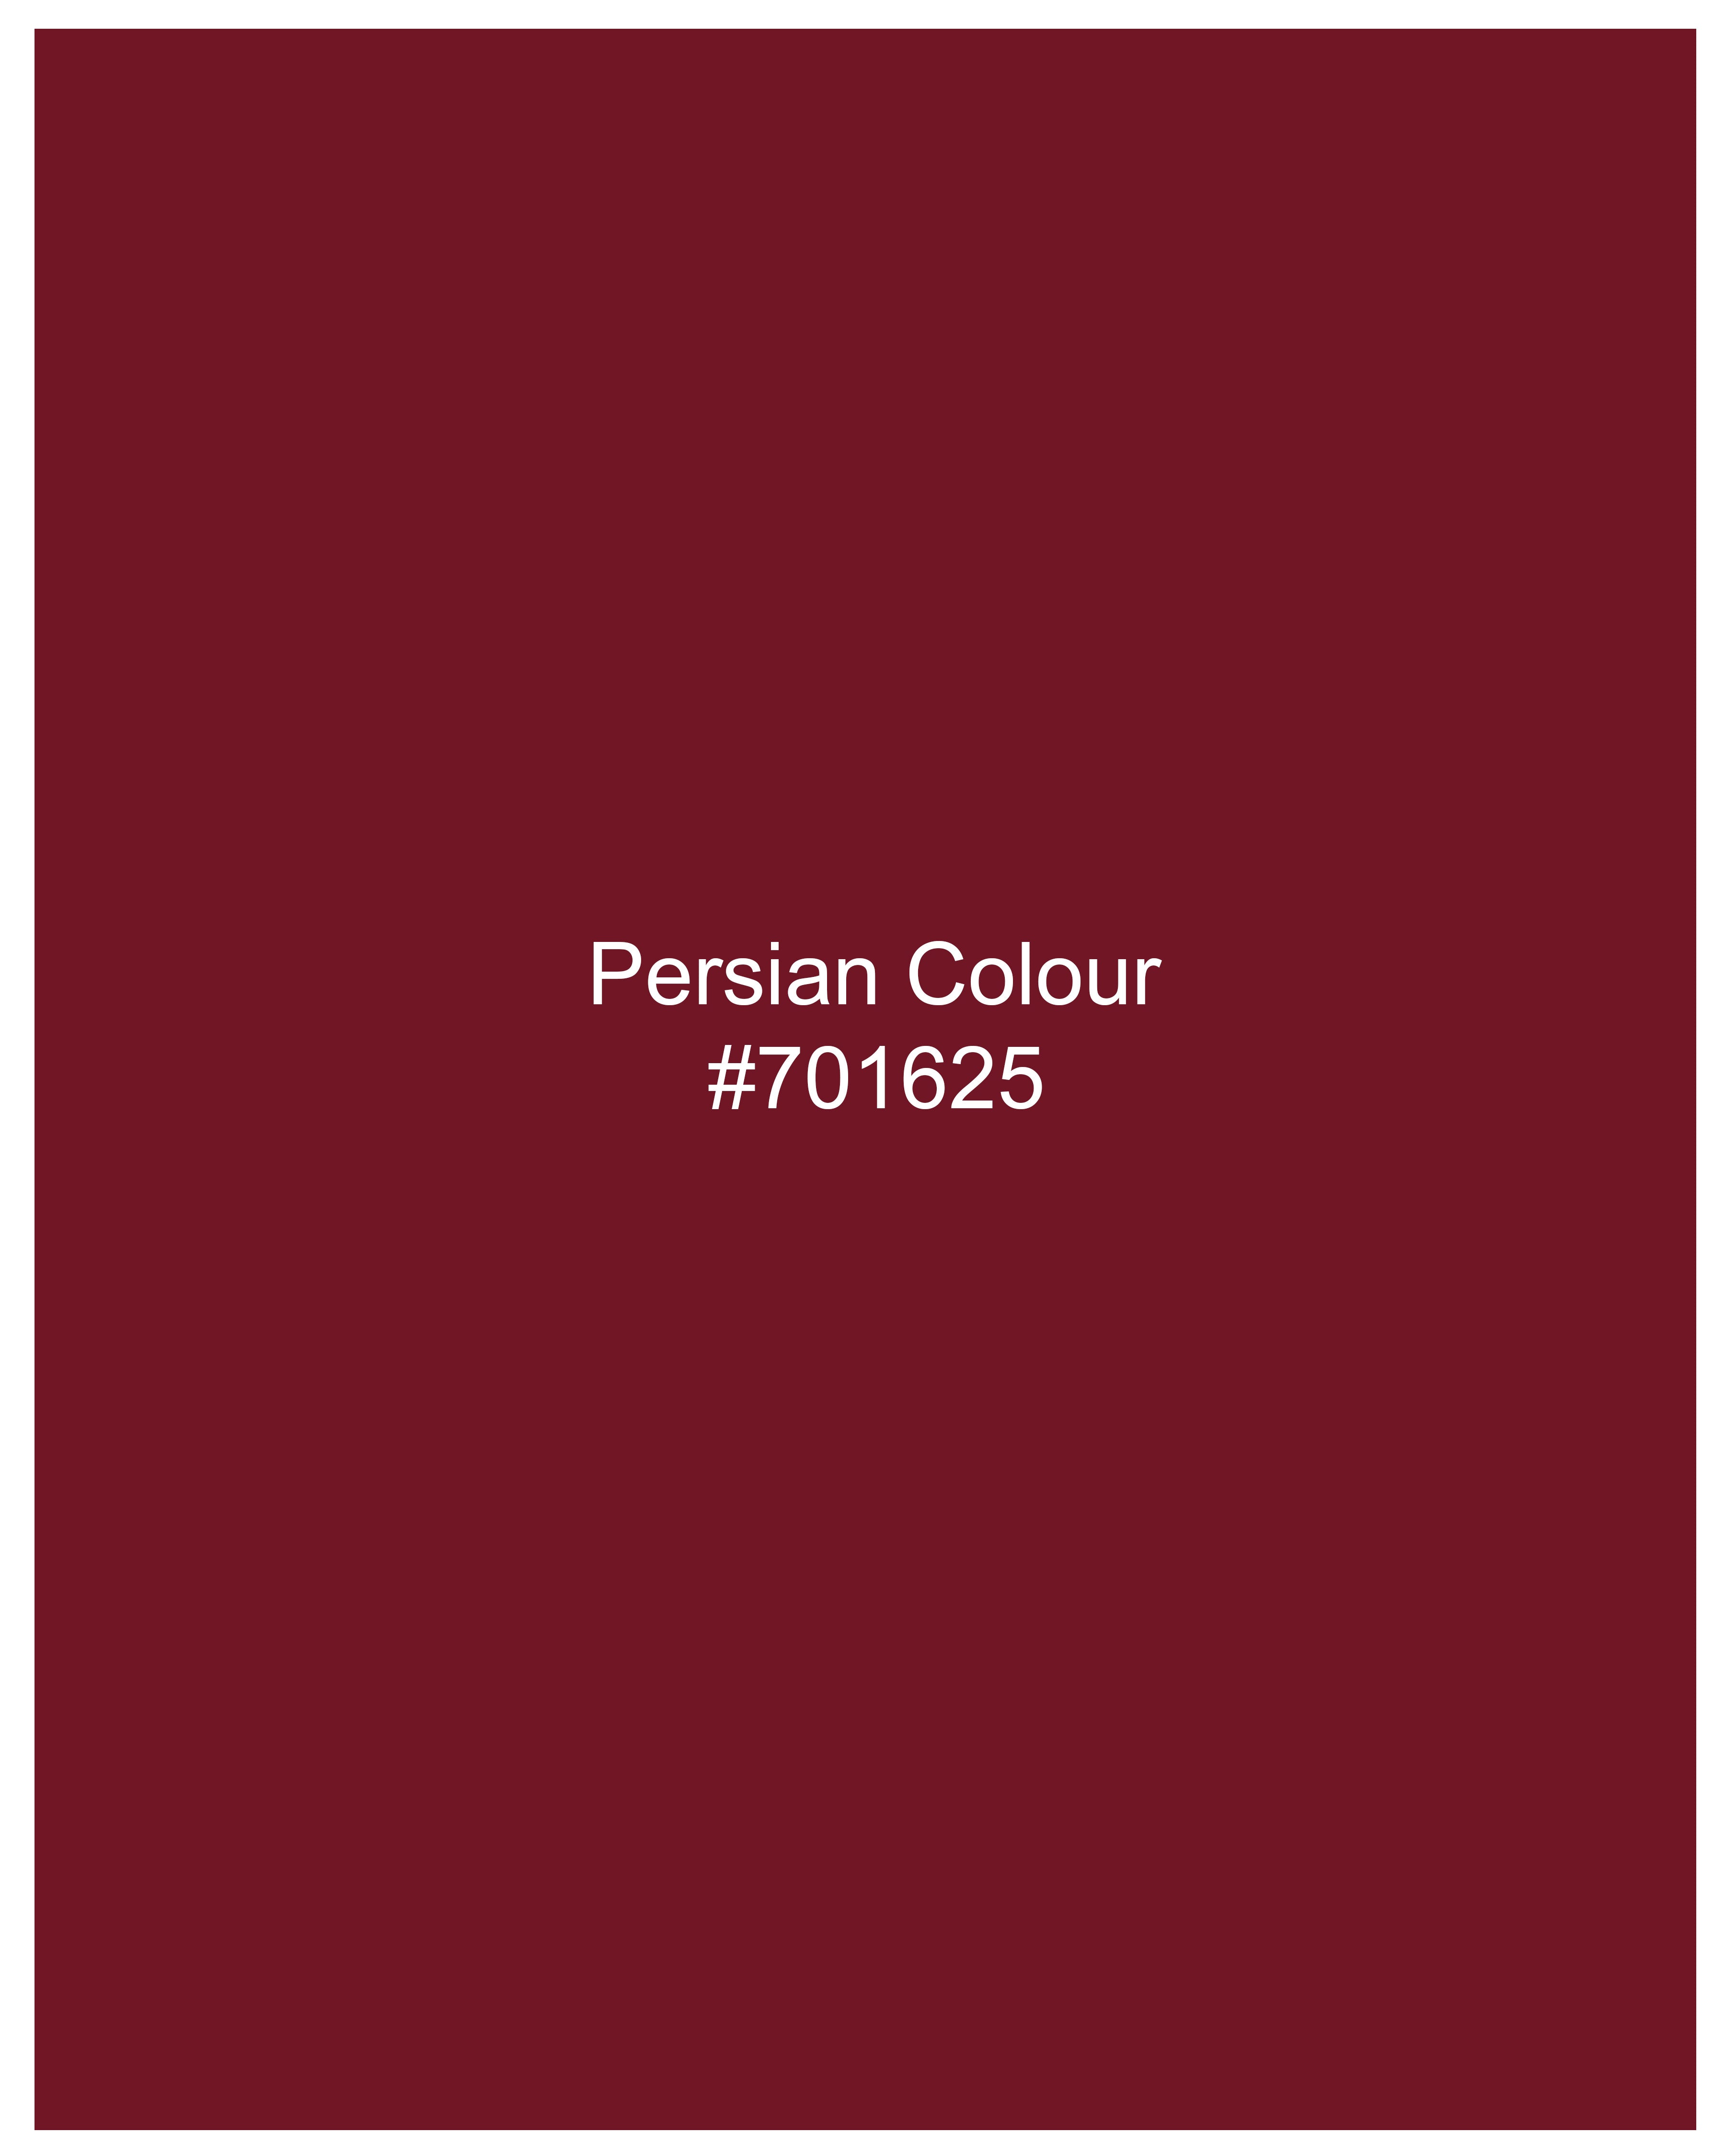 Persian Red Printed Viscose Shrug WTP020-32, WTP020-34, WTP020-36, WTP020-38, WTP020-40, WTP020-42